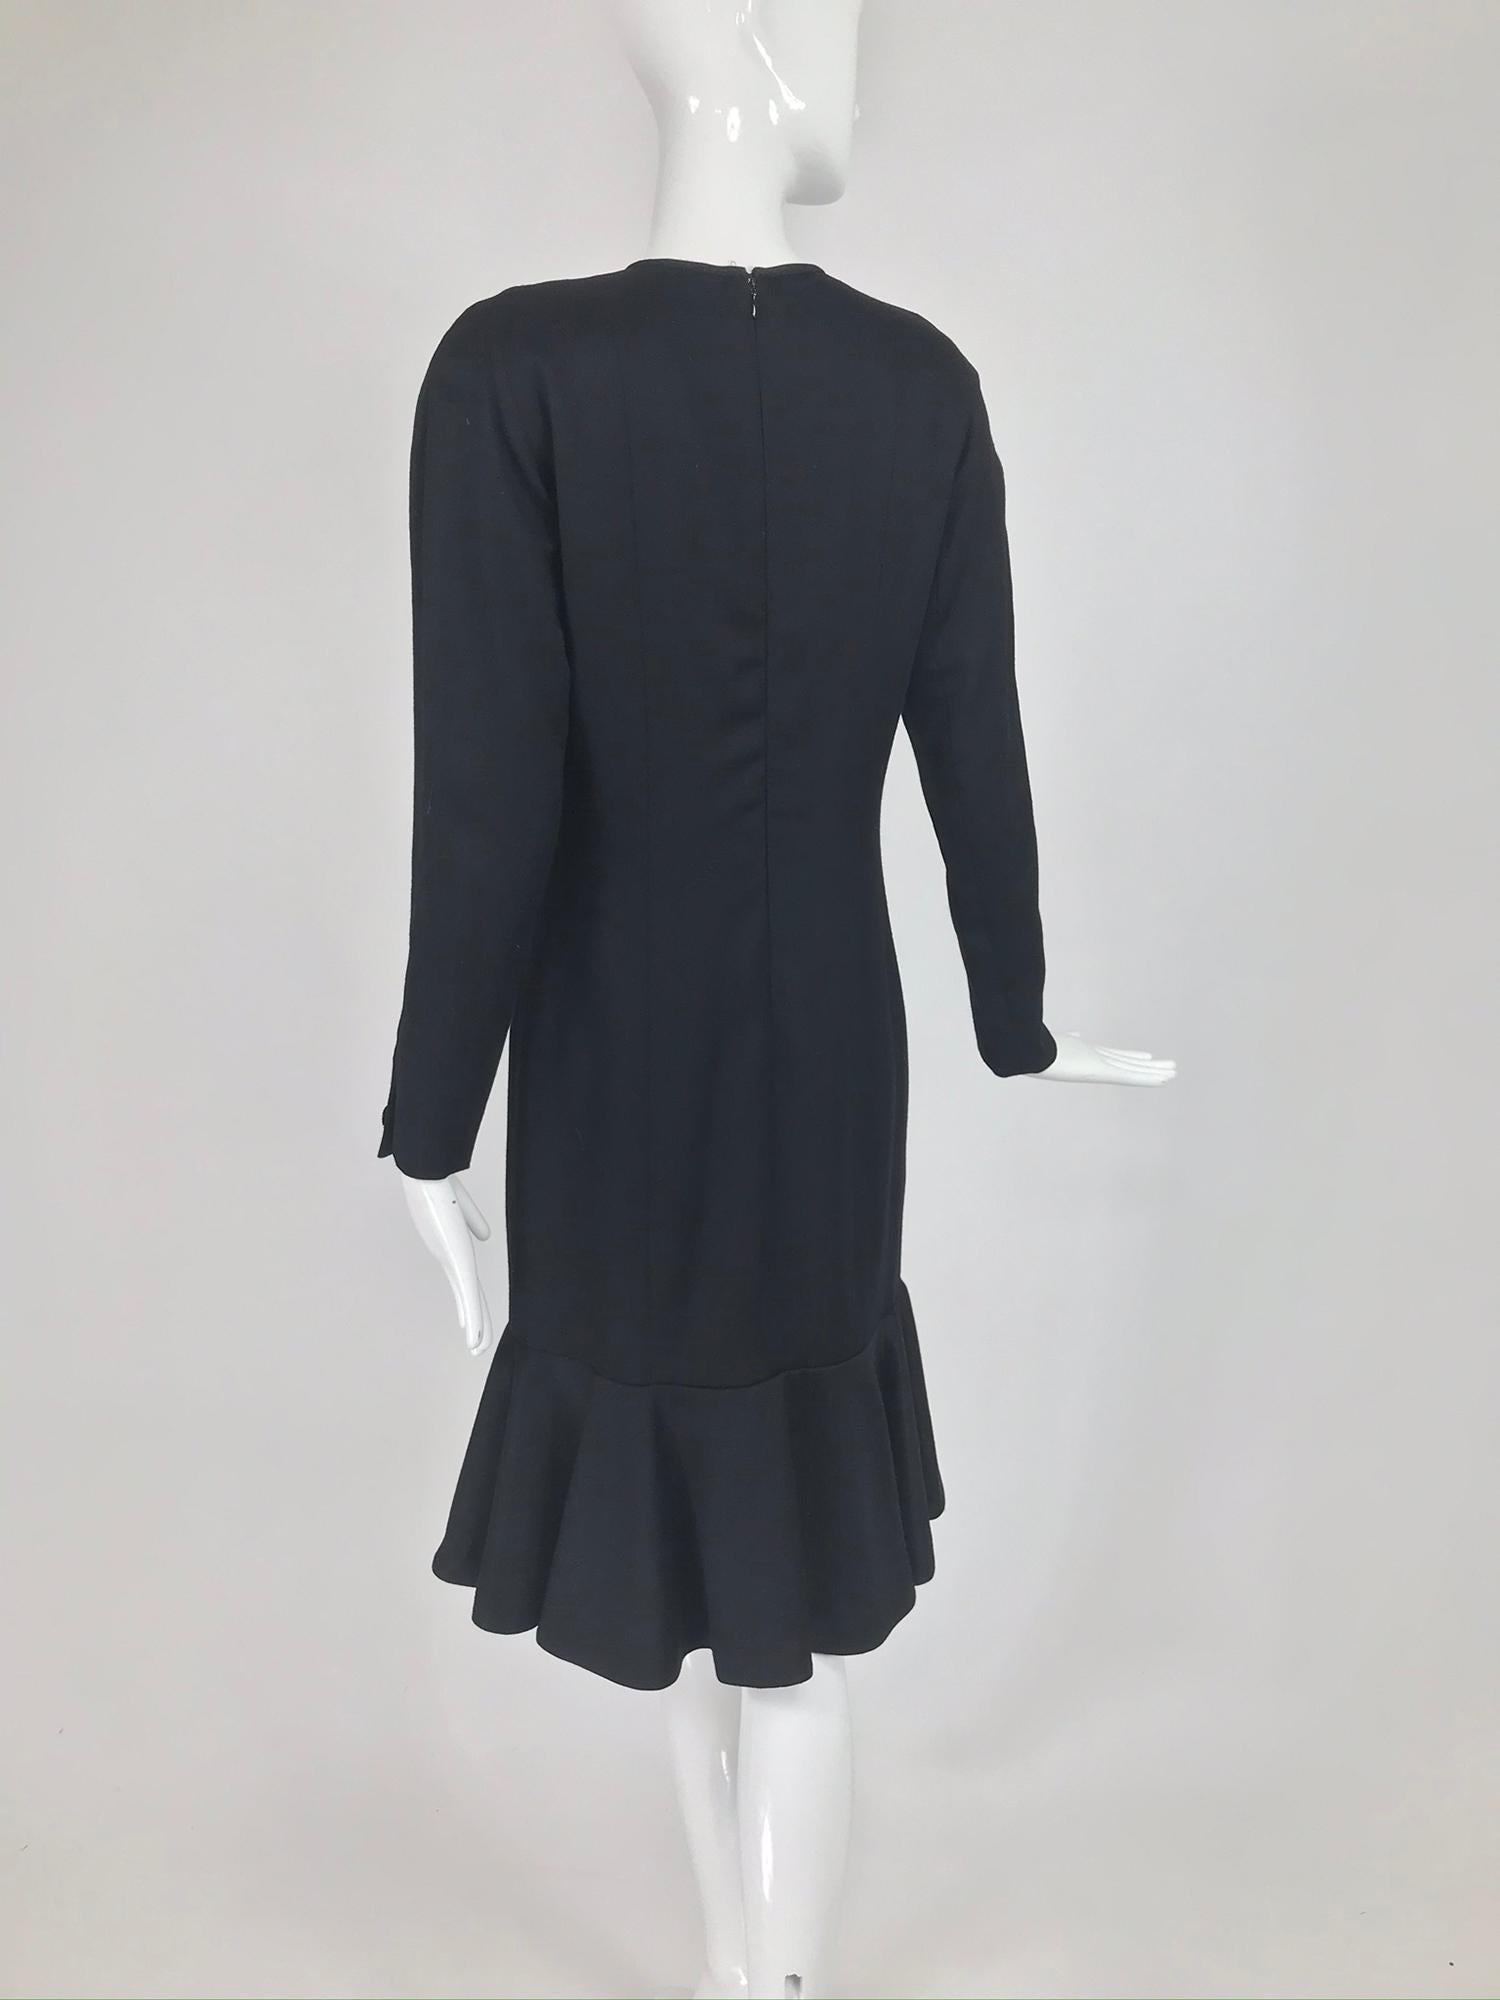 Nina Ricci Black Wool Semi Fitted Dress with Flared Hem 1980s  4